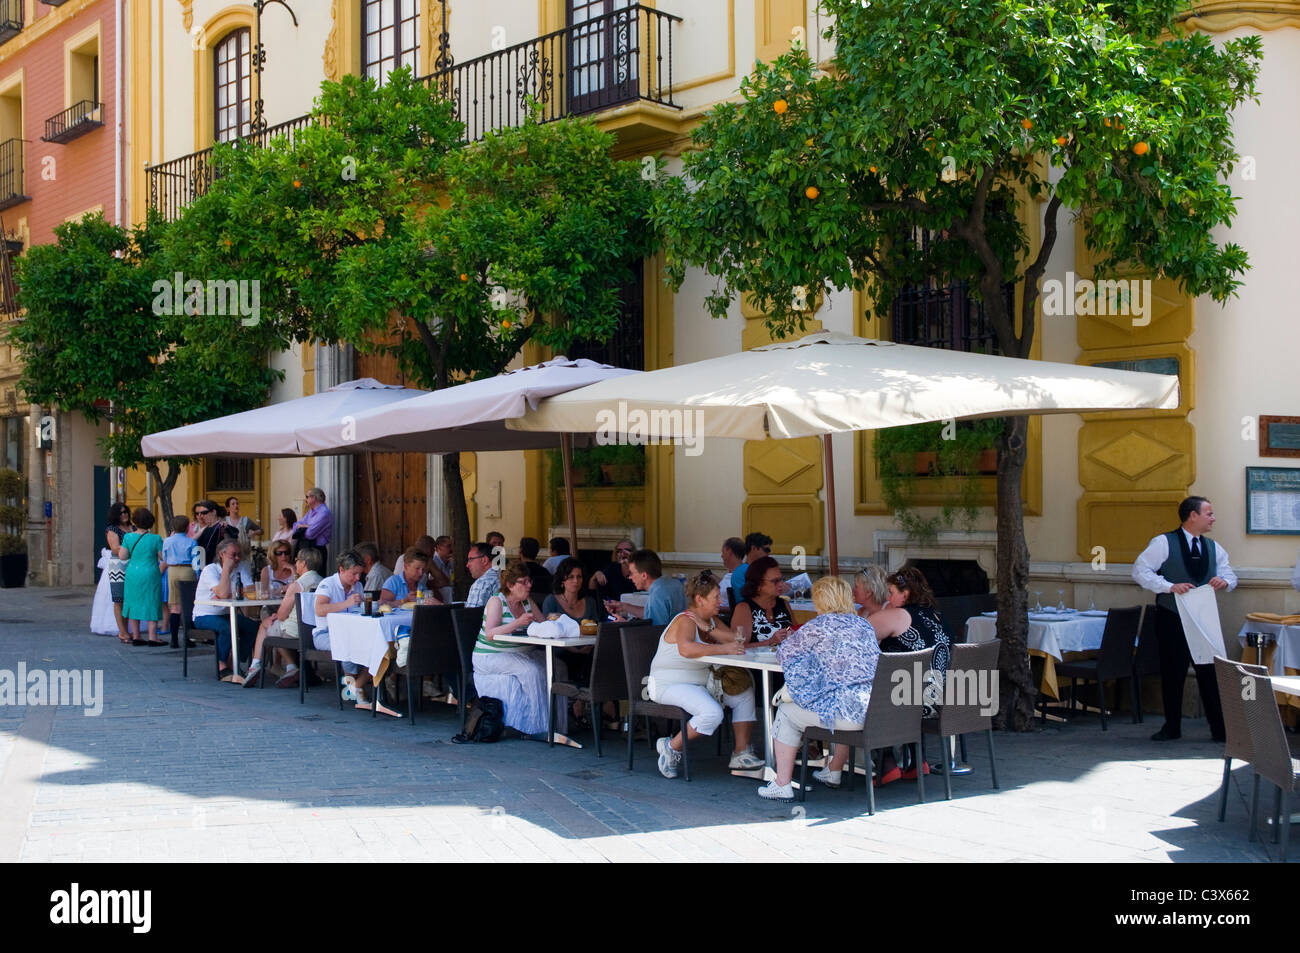 Scena di strada, Siviglia, Spagna. Per coloro che godono di bere e mangiare presso un outdoor cafe bar con ombrelloni. Foto Stock